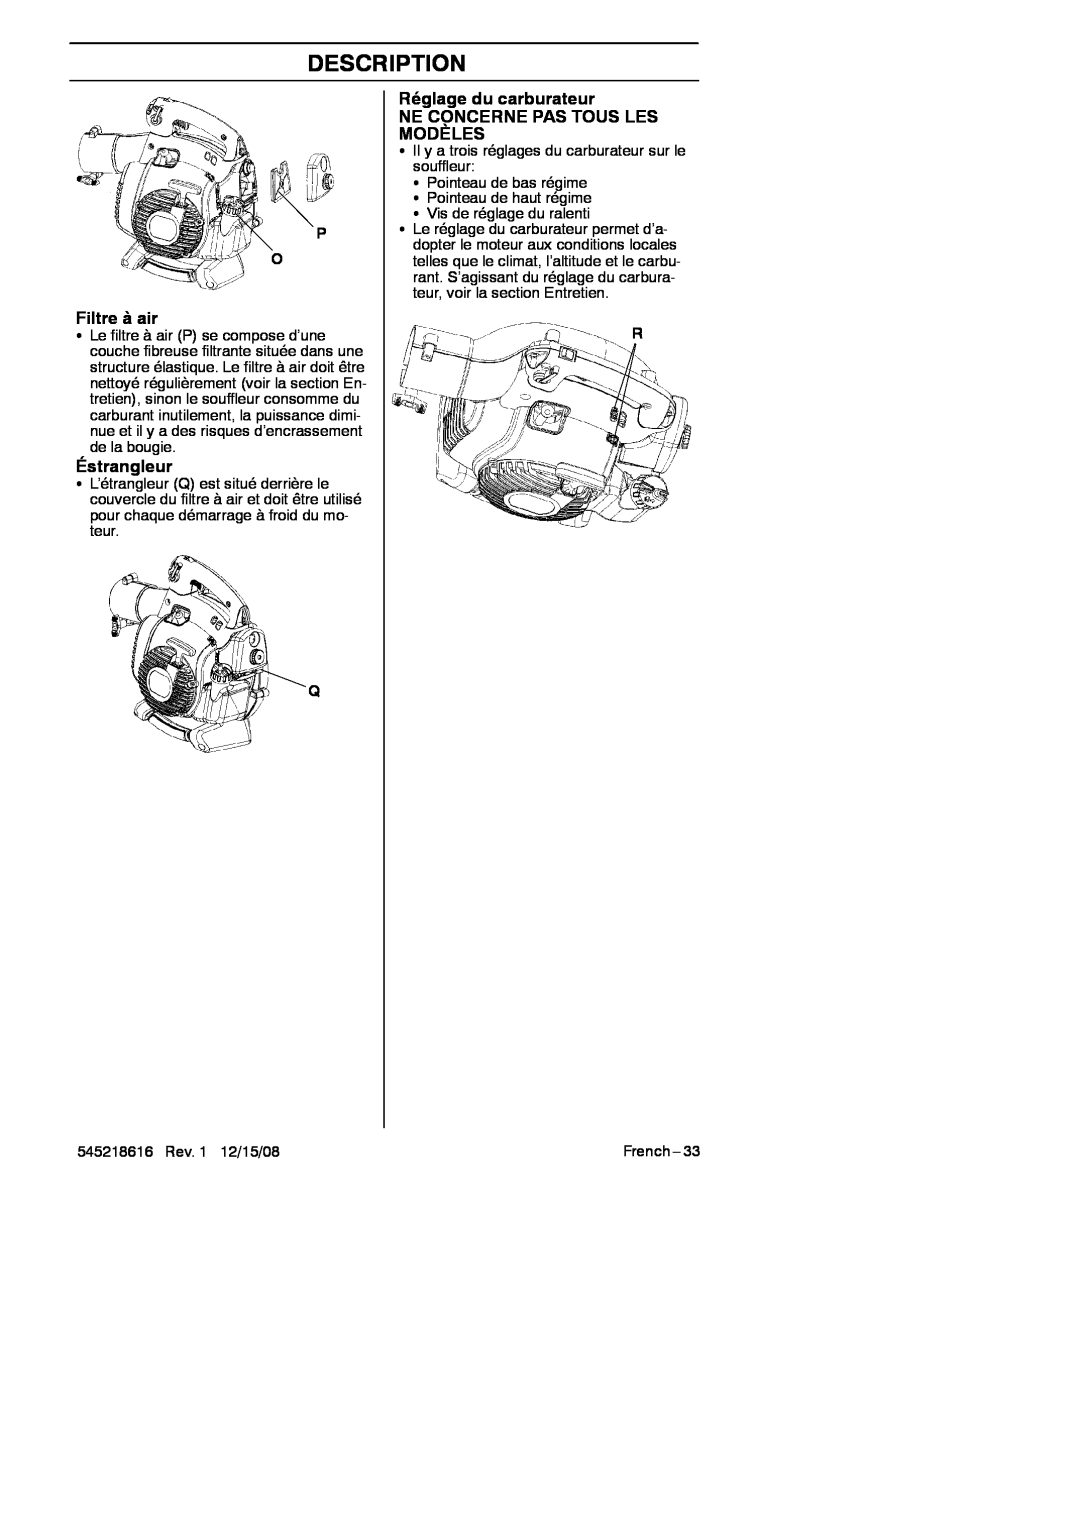 RedMax HB280 manual Filtre à air, Éstrangleur, Réglage du carburateur, Ne Concerne Pas Tous Les Modèles, Description 